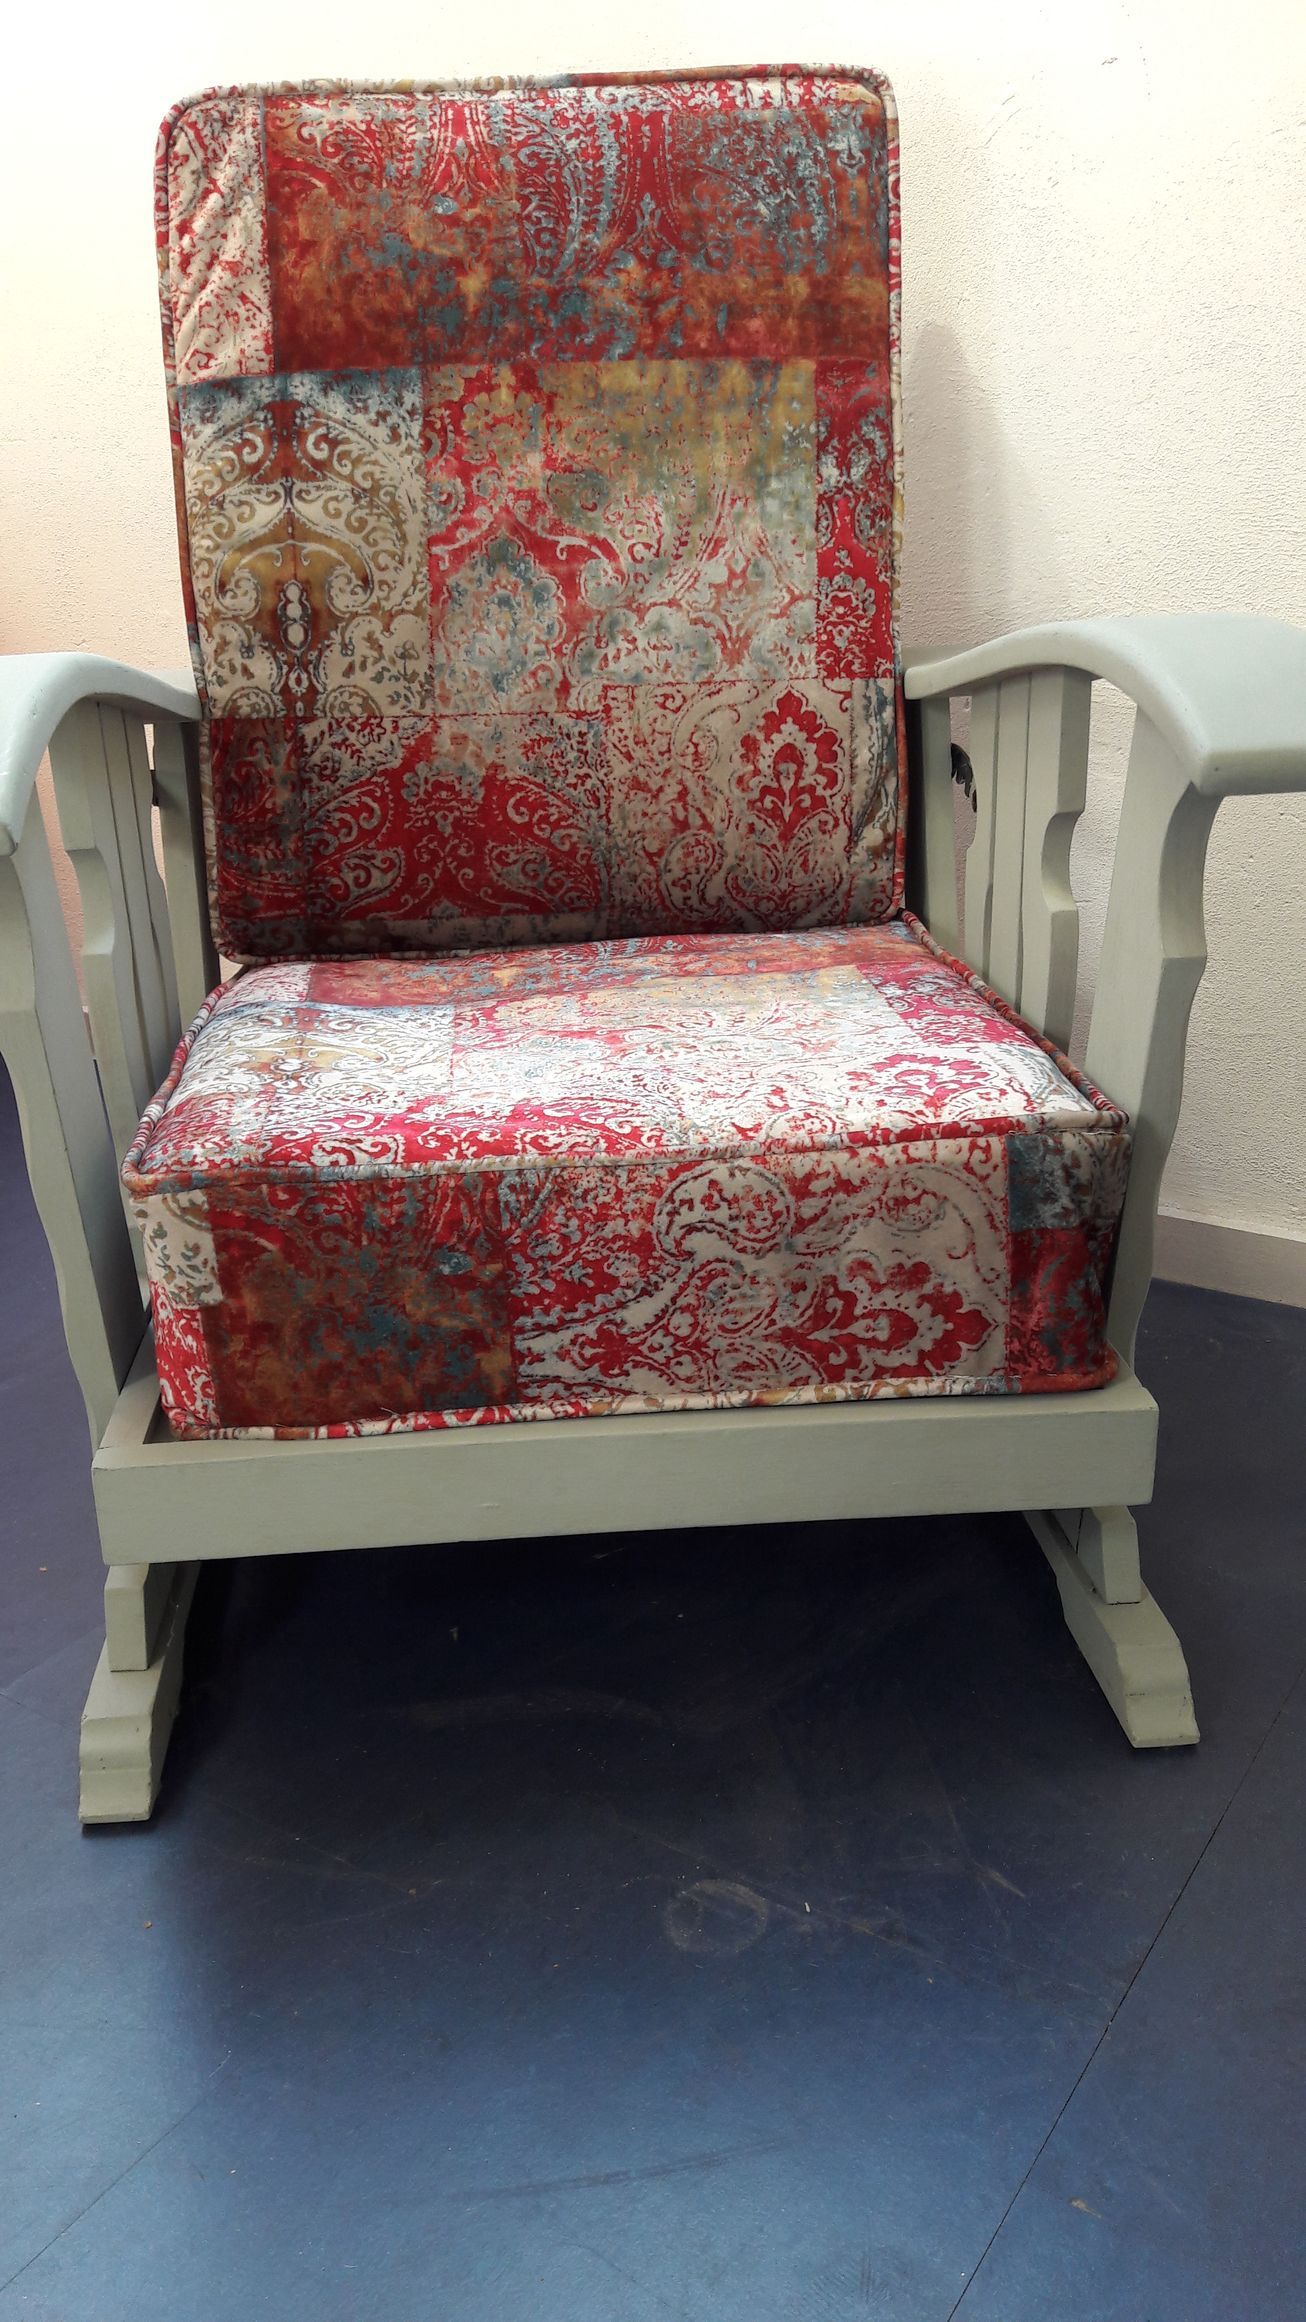 grijze stoel met rode fleurige print
